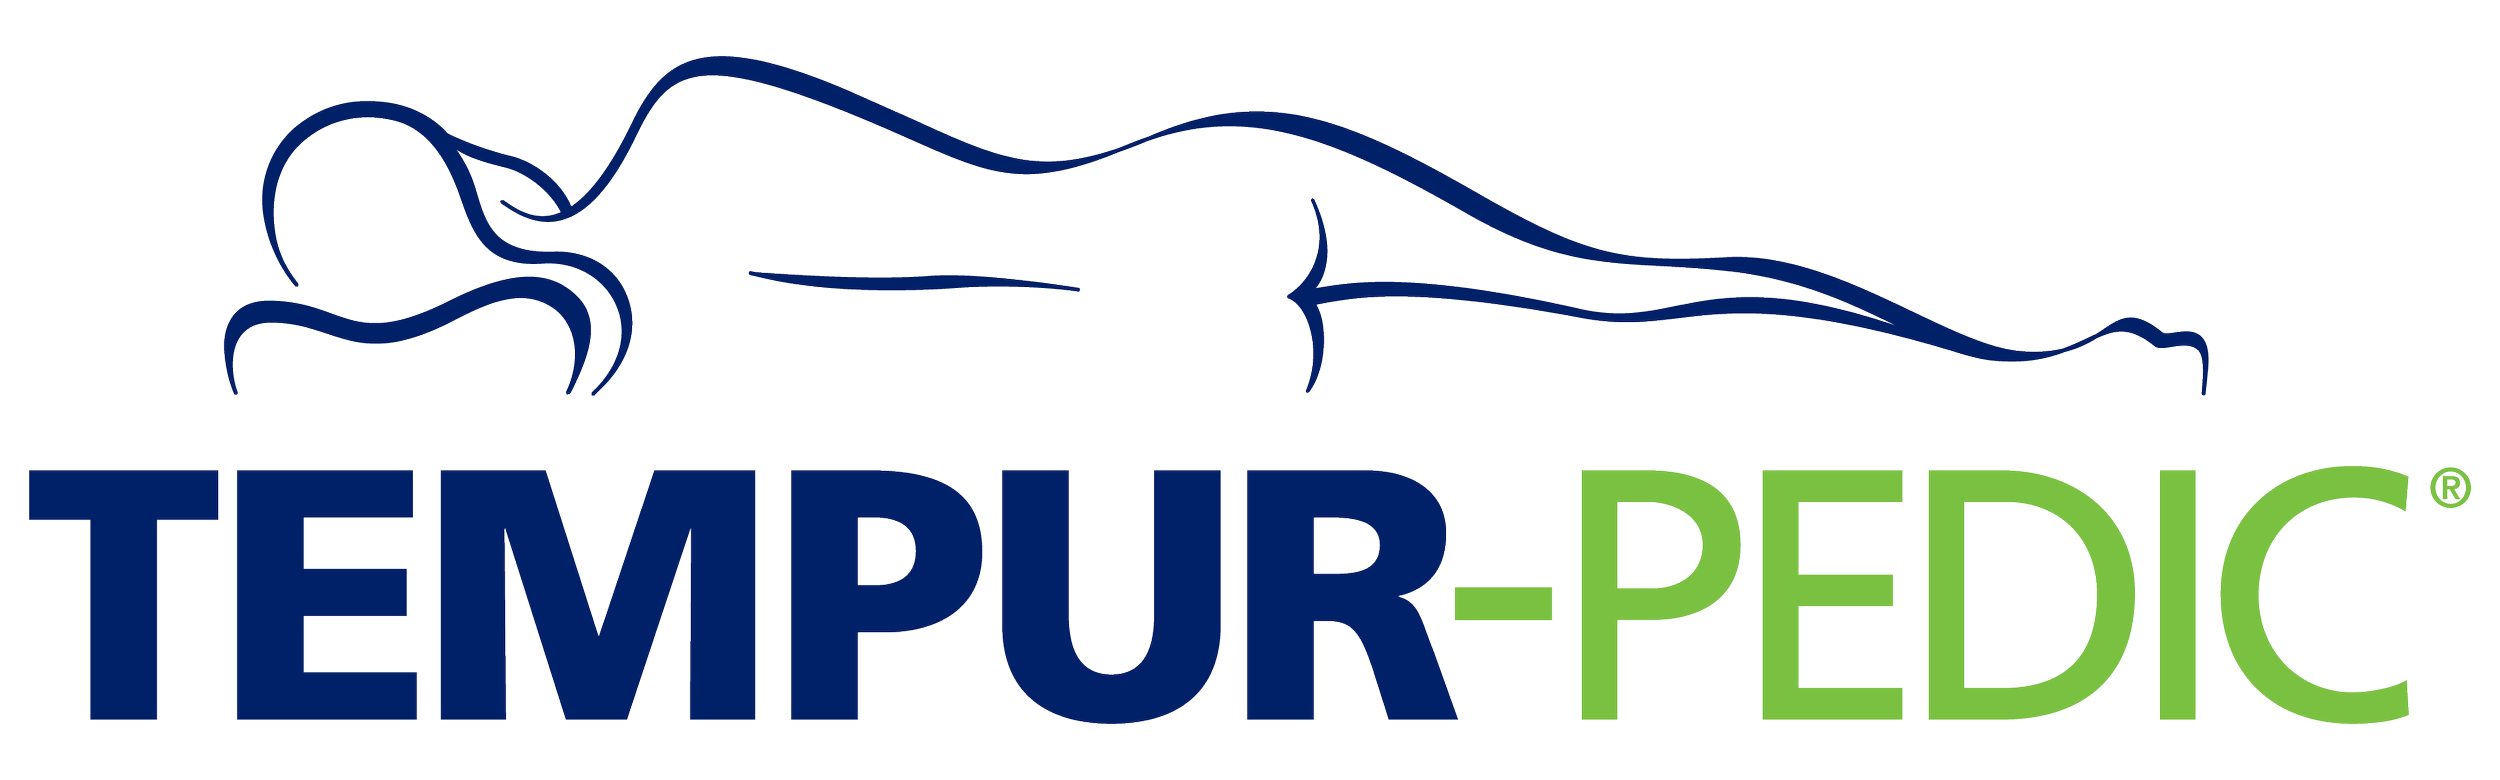 tempurpedic-logo.png